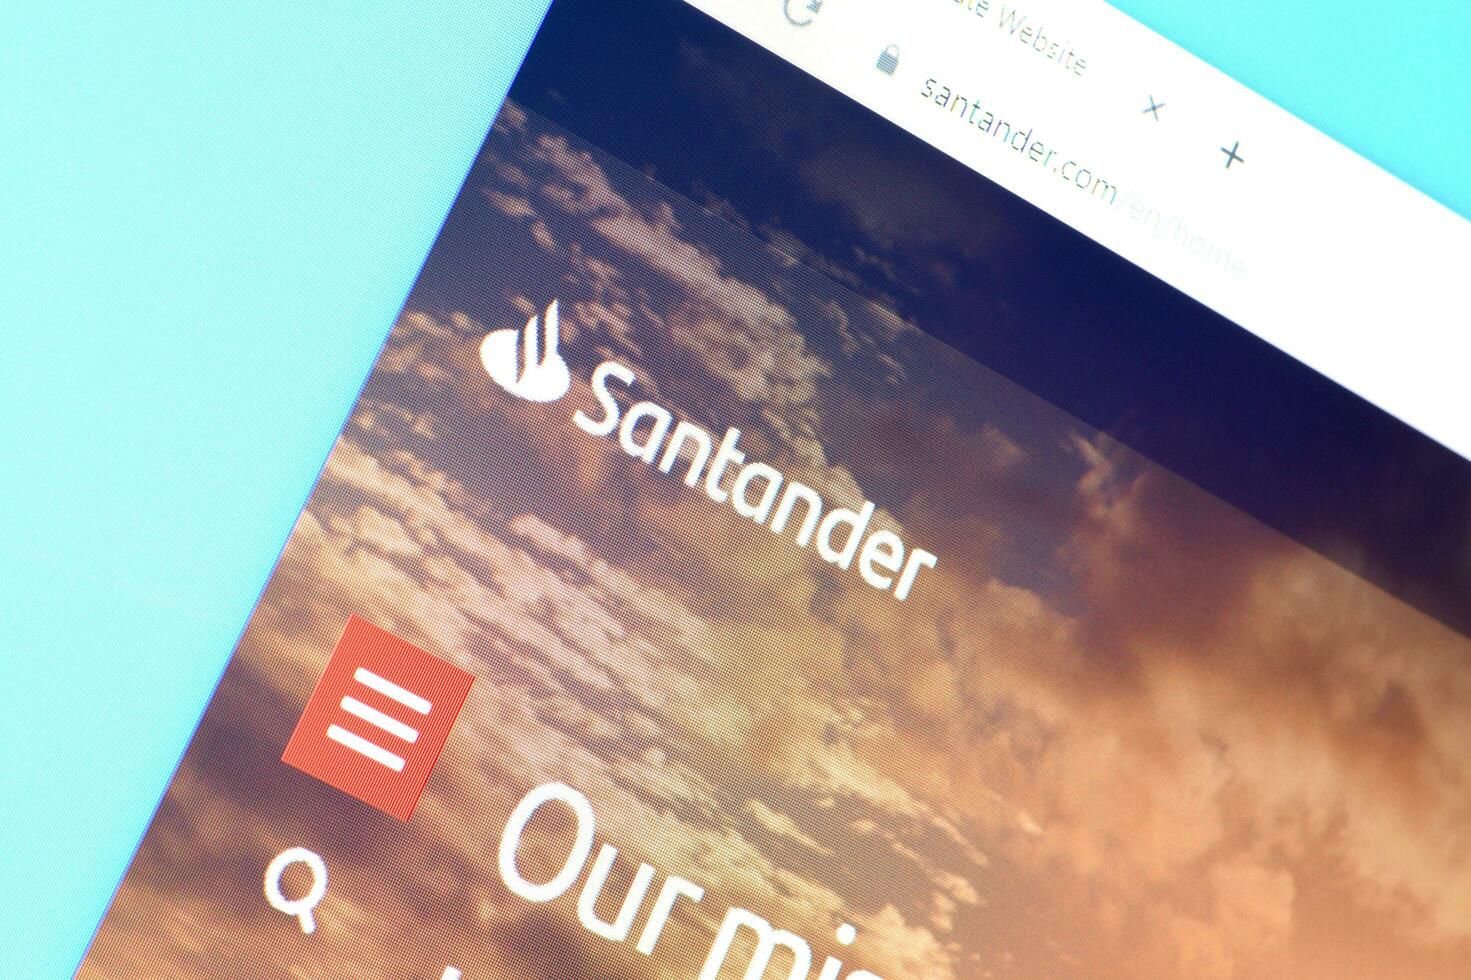 Homepage of santander website on the display of PC, url - santander.com. photo